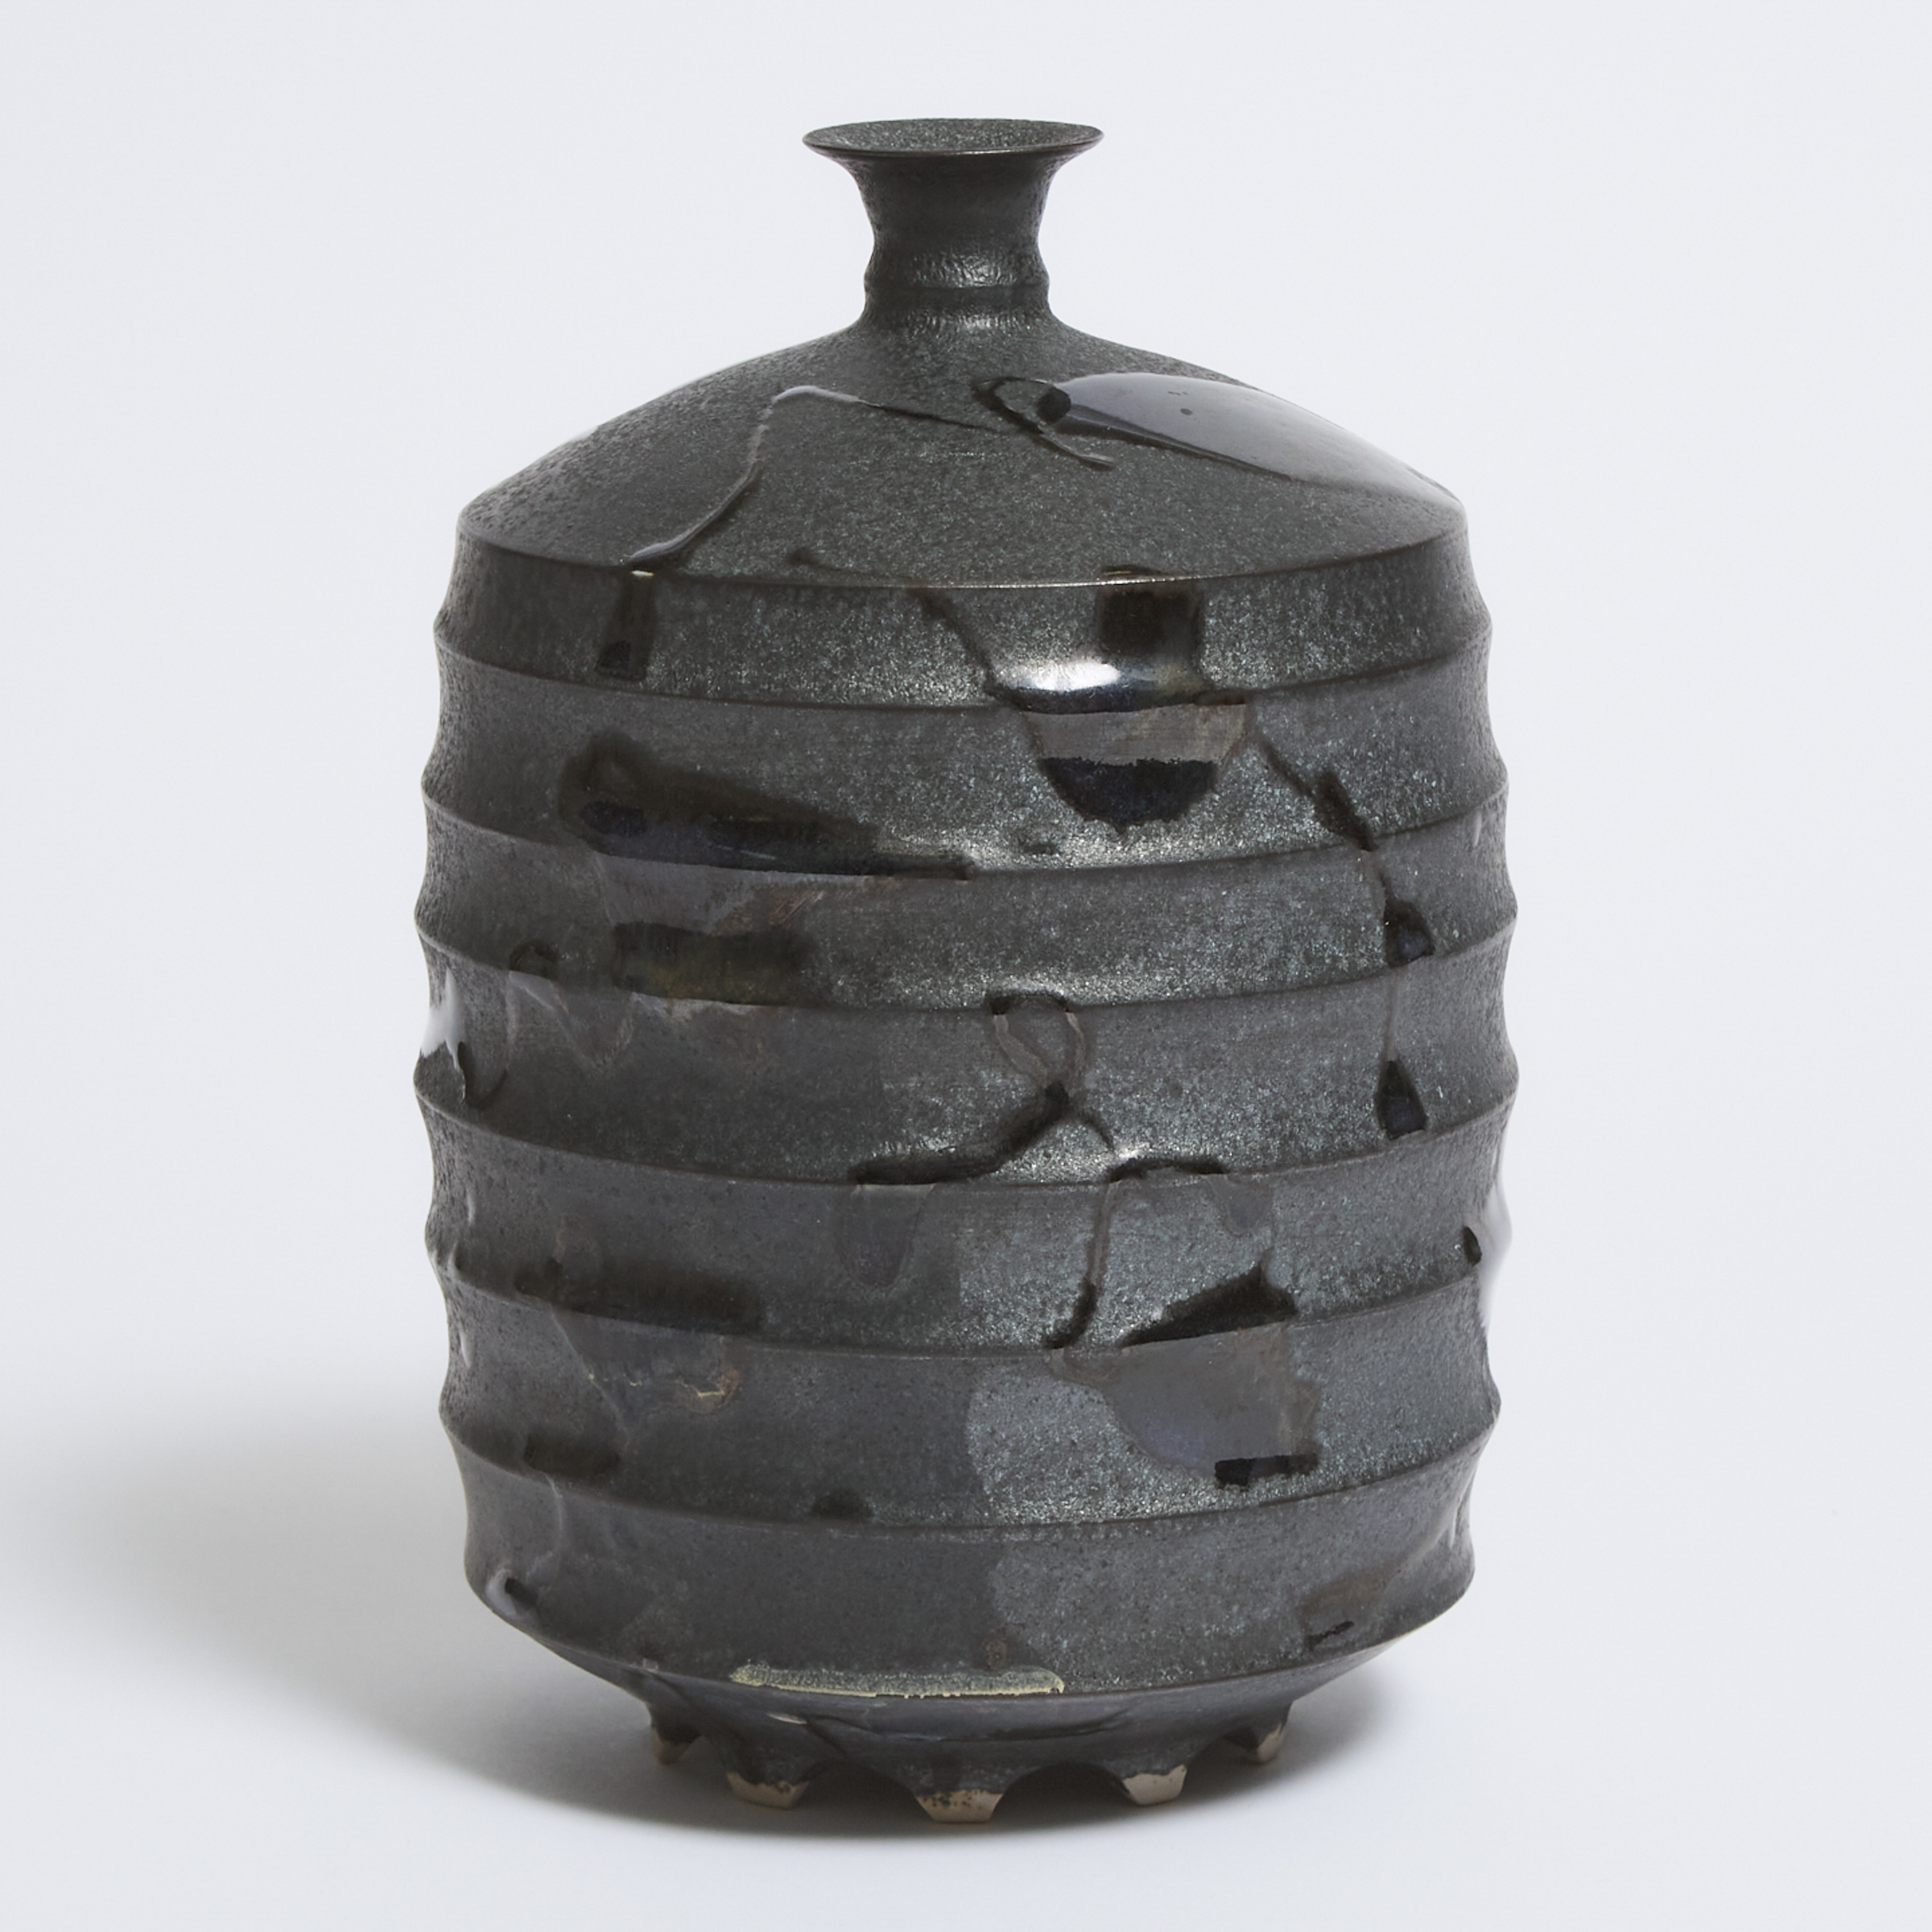 Kayo O'Young (Canadian, b.1950), Black Glazed Vase, 1997